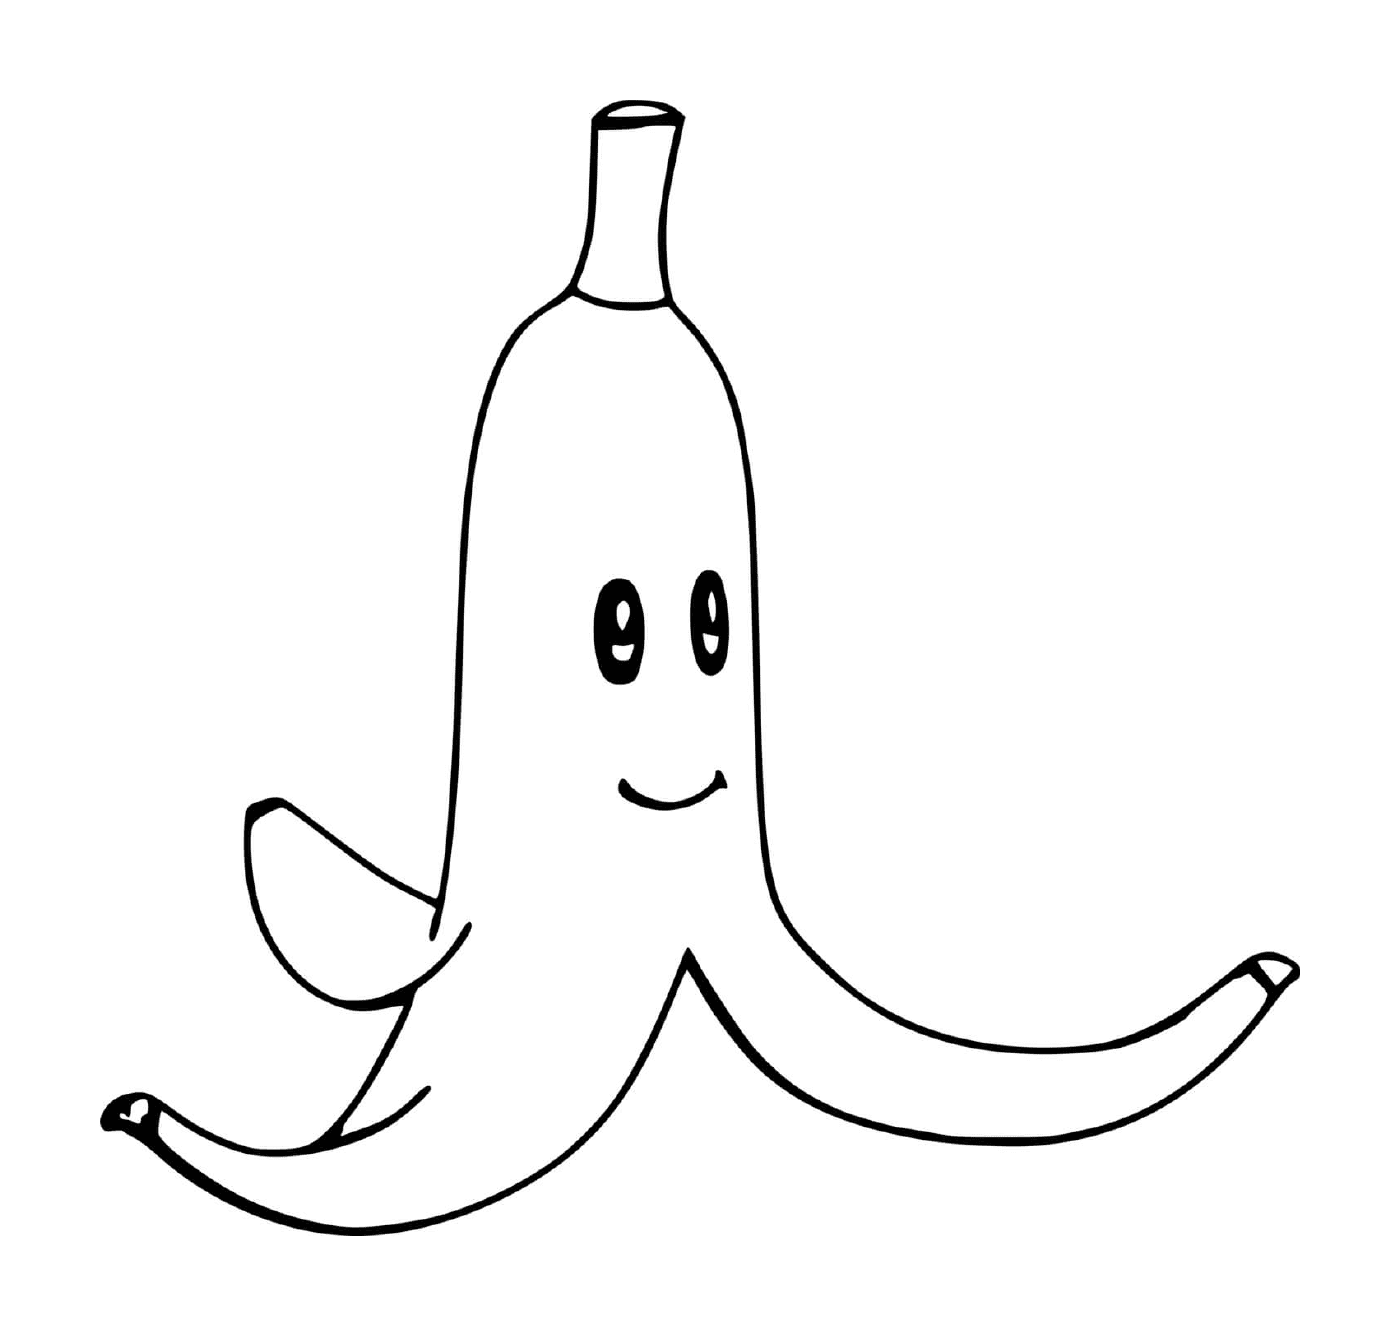  Eine Banane 